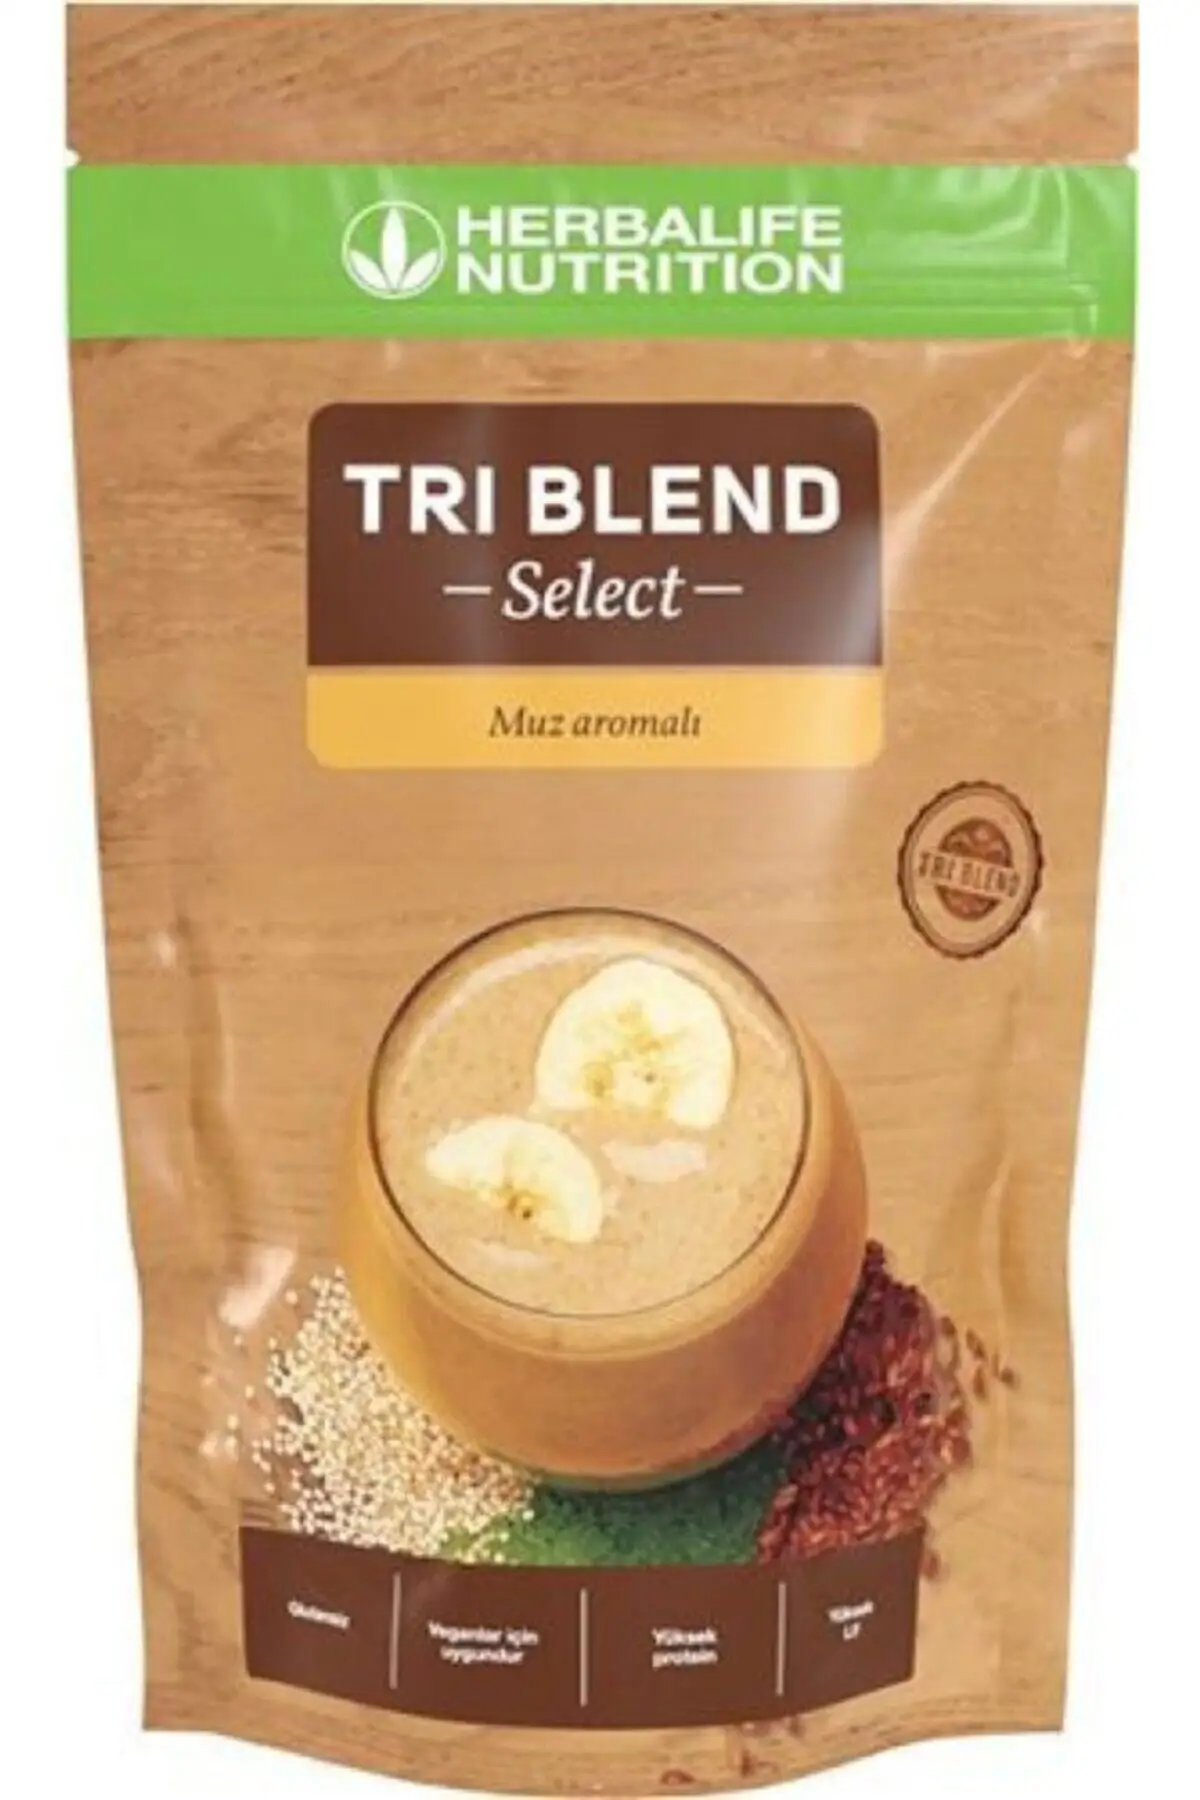 

Herbalife TRI BLEND SELECT High Protein, питательный порошок с банановым вкусом, льняной протеин, питательная смесь